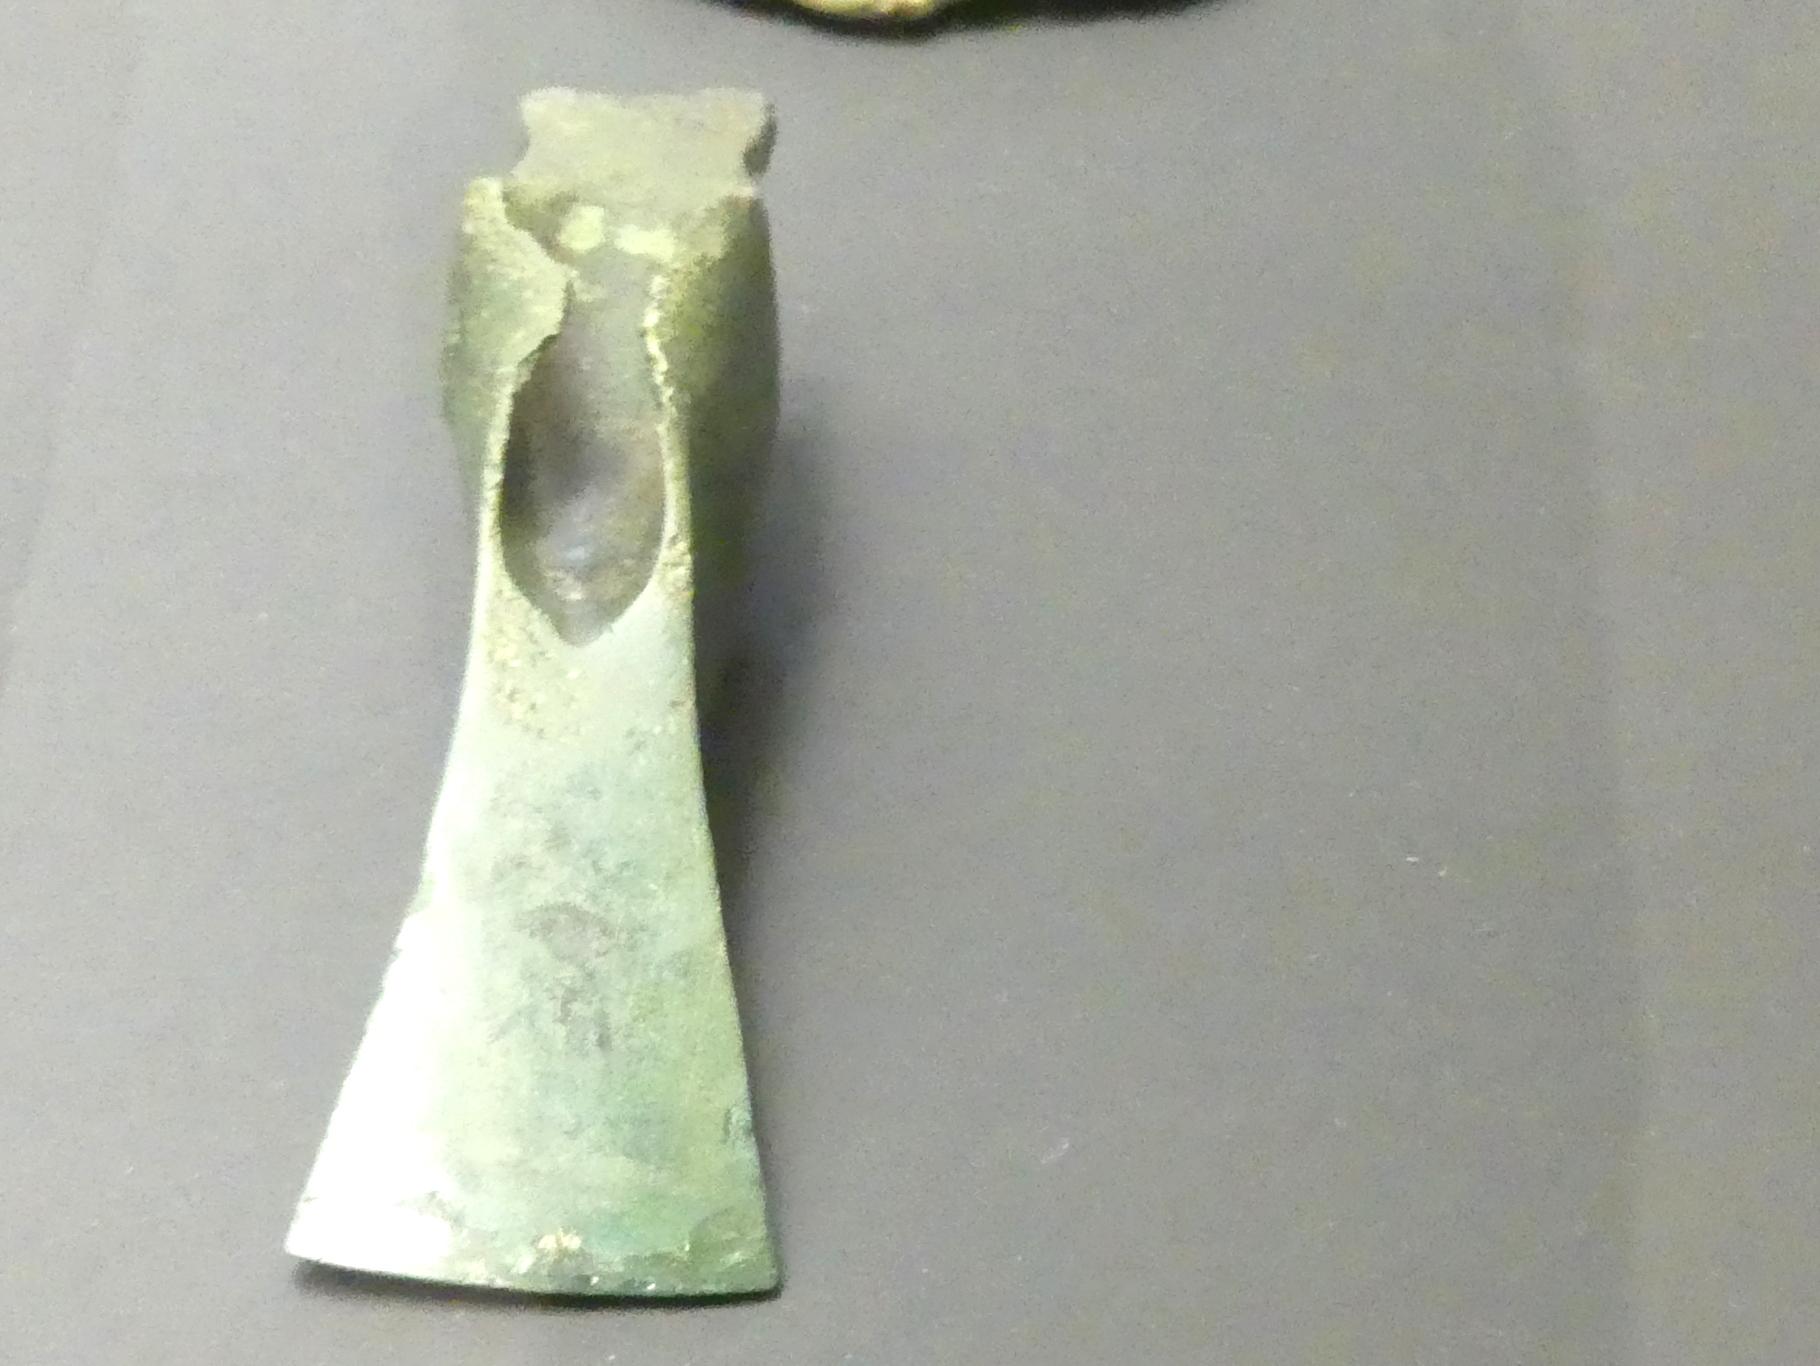 Lappenbeil, Urnenfelderzeit, 1400 - 700 v. Chr., 900 - 700 v. Chr., Bild 1/2